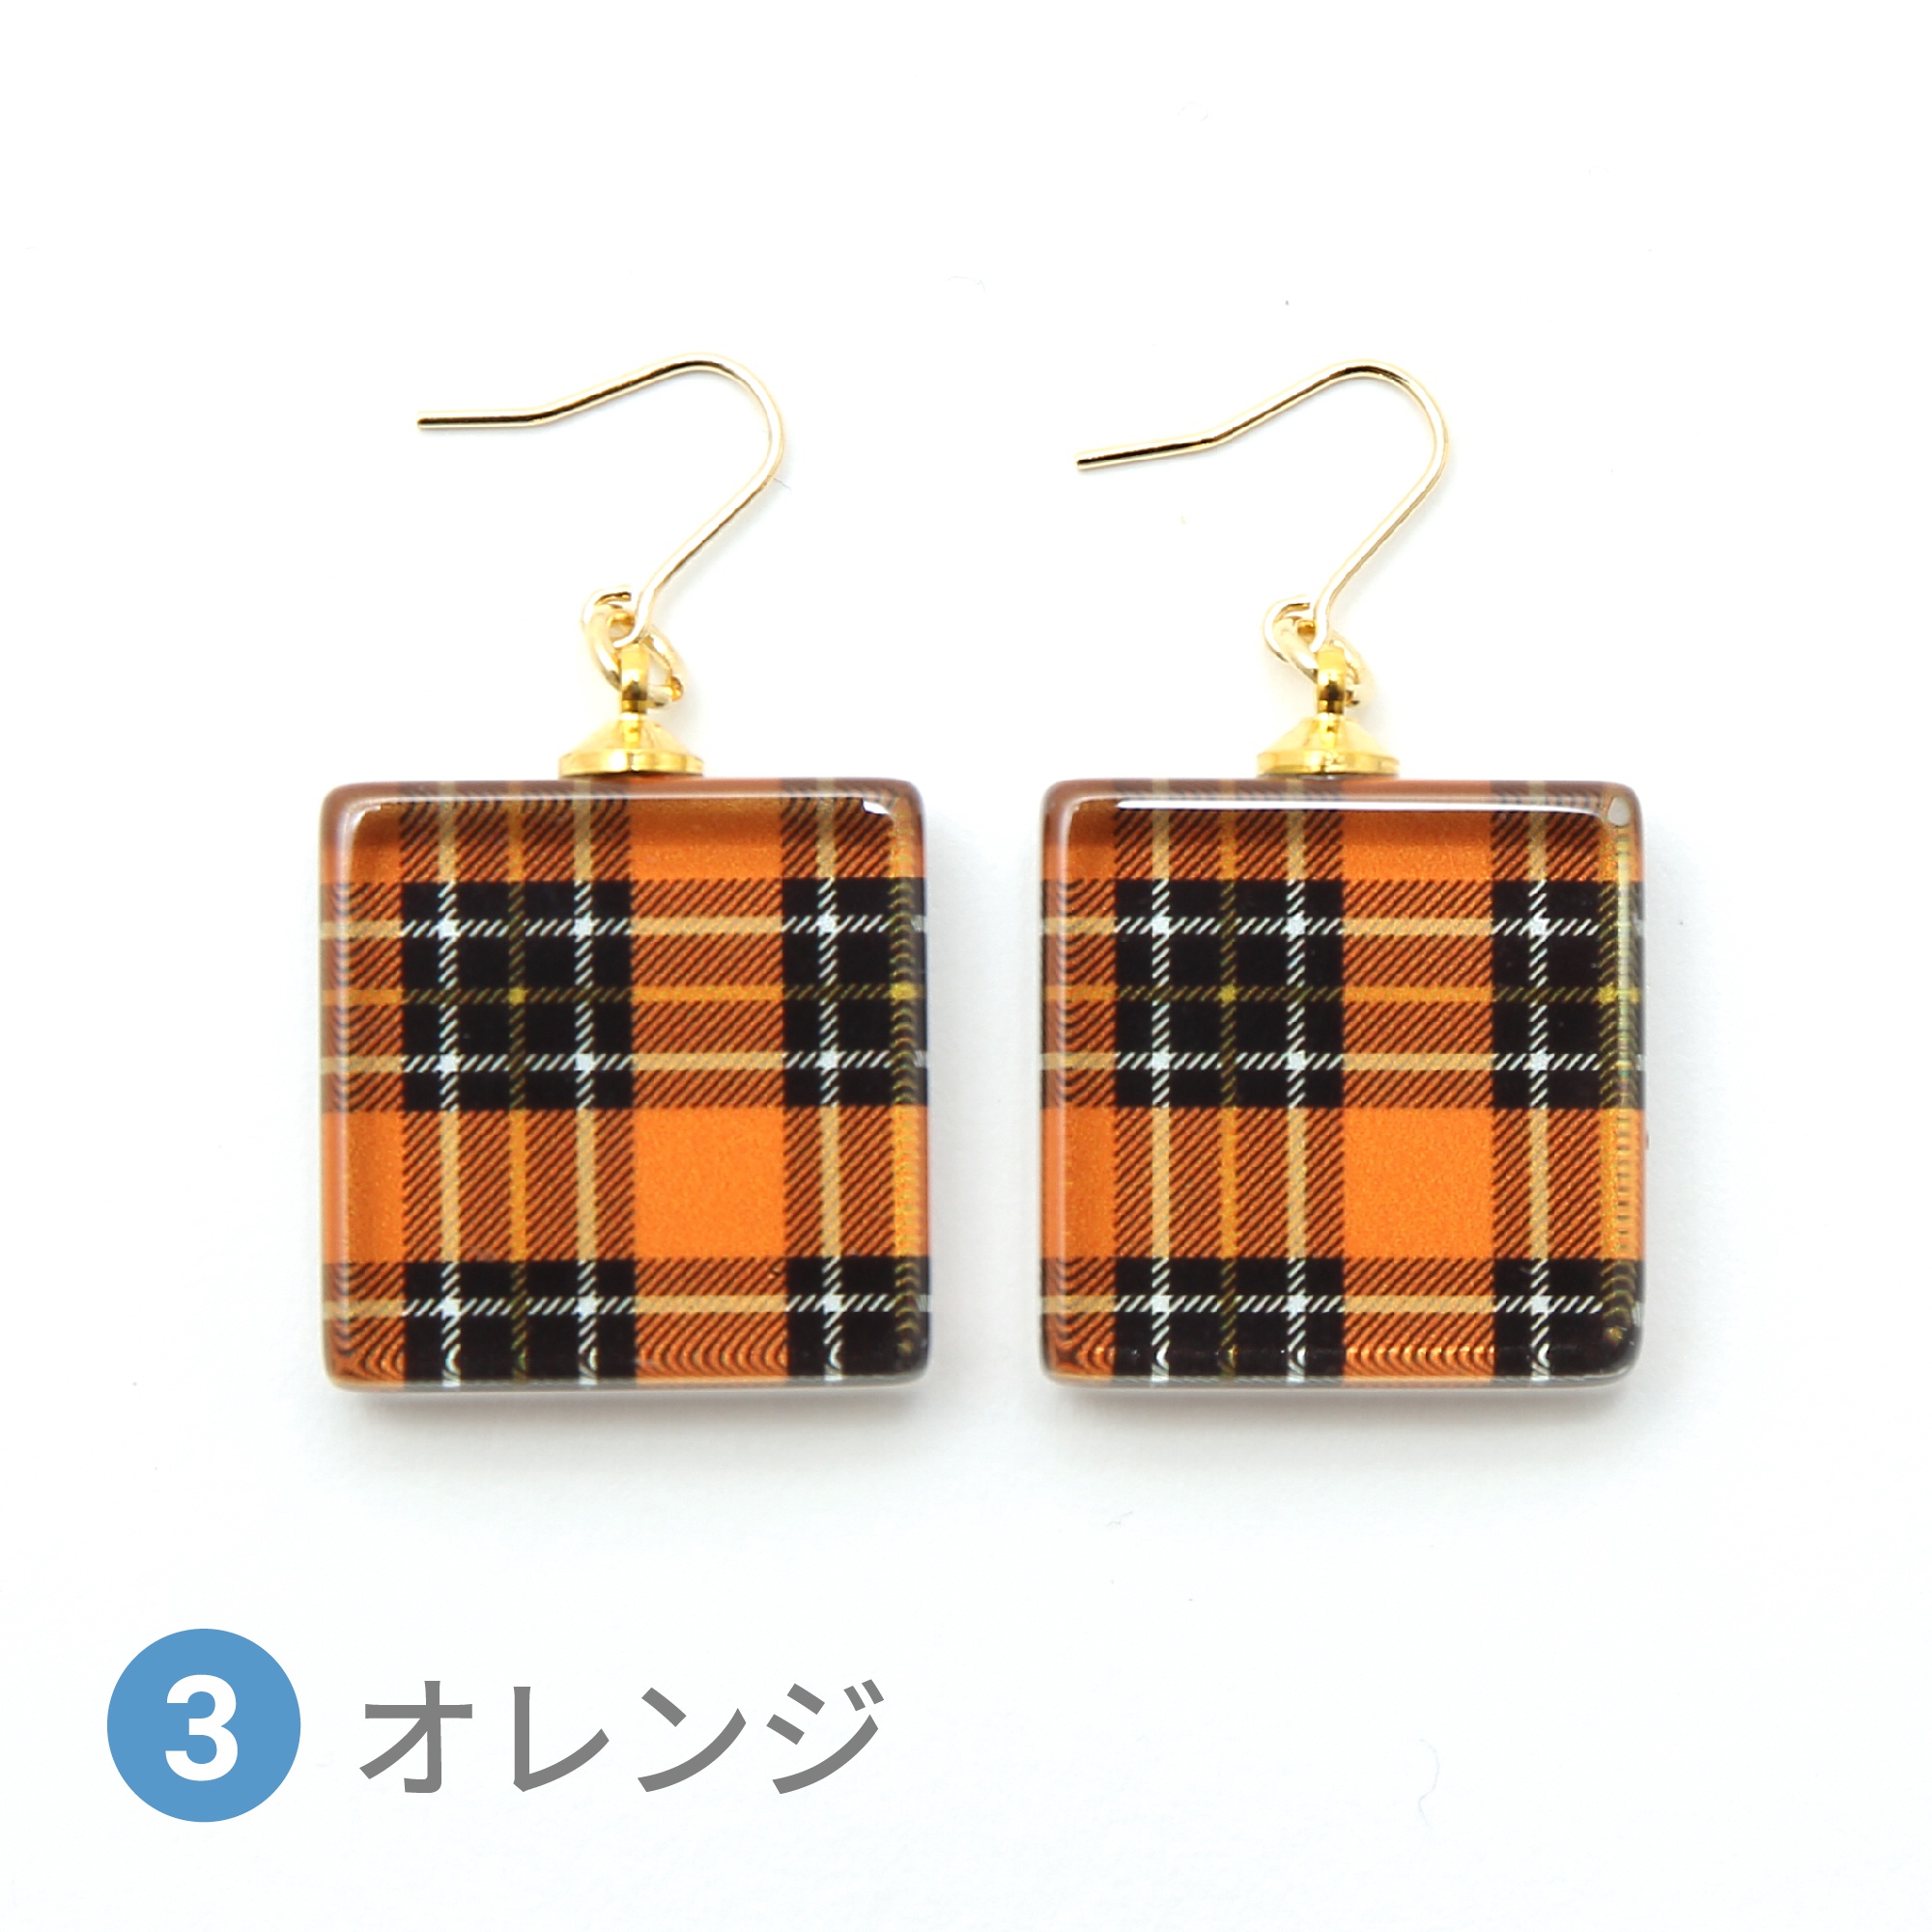 Glass accessories Pierced Earring TARTAN orange square shape